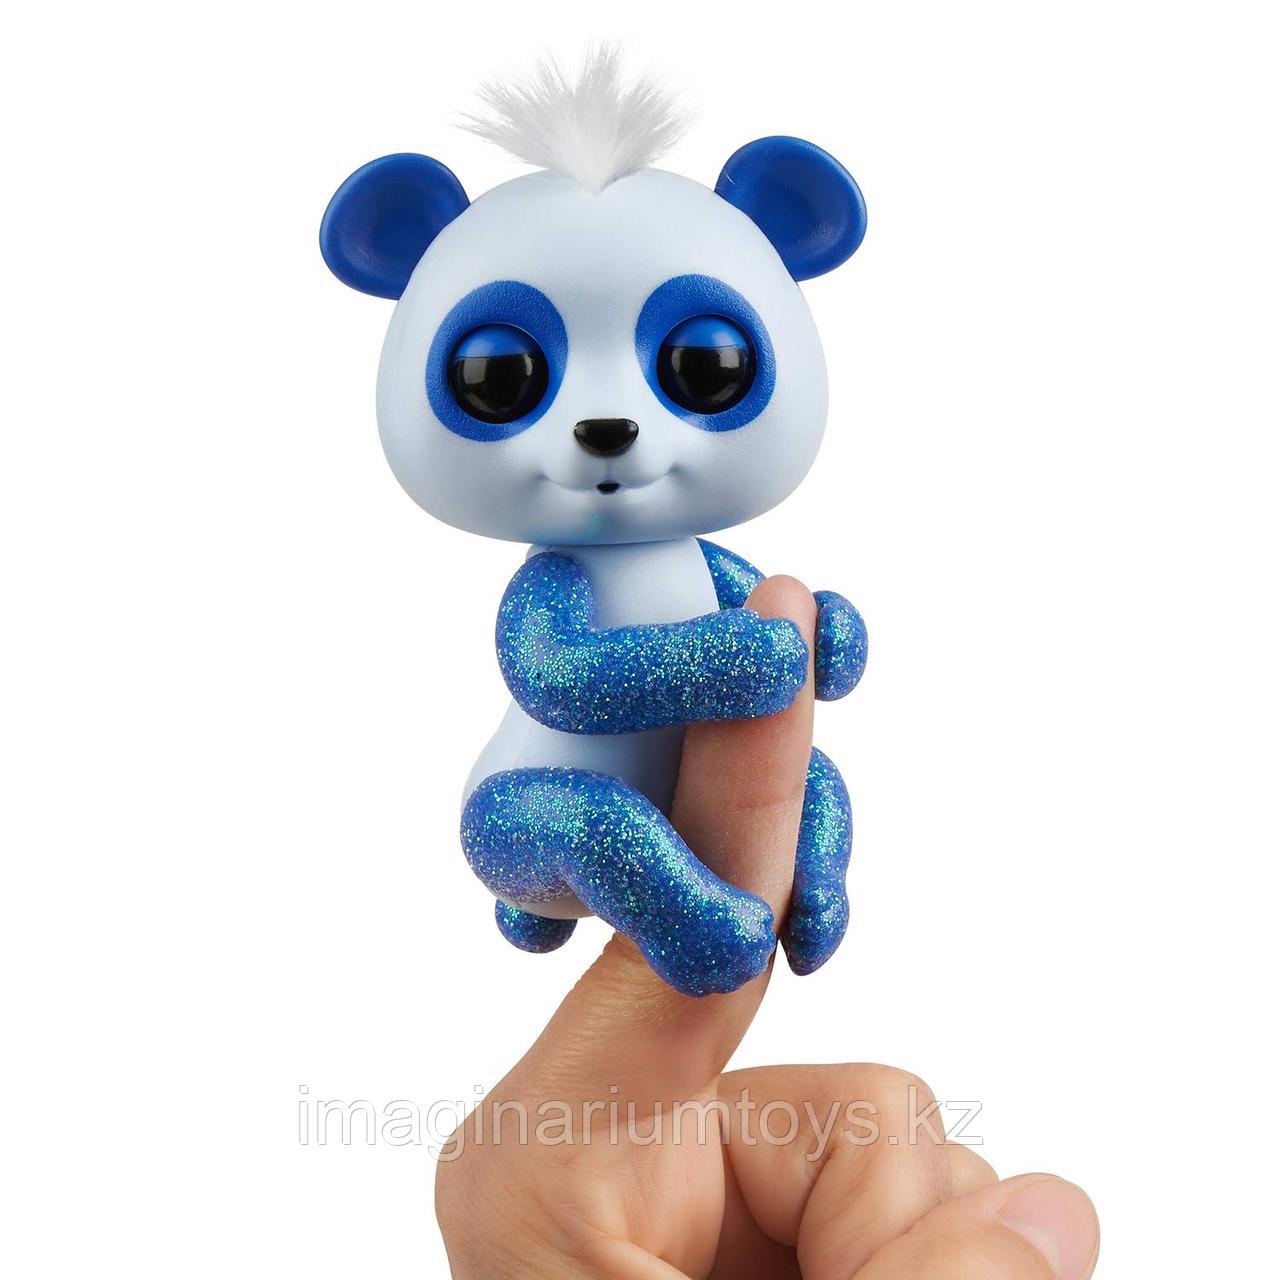 Фингерлингс панда интерактивная Fingerlings сине-белая